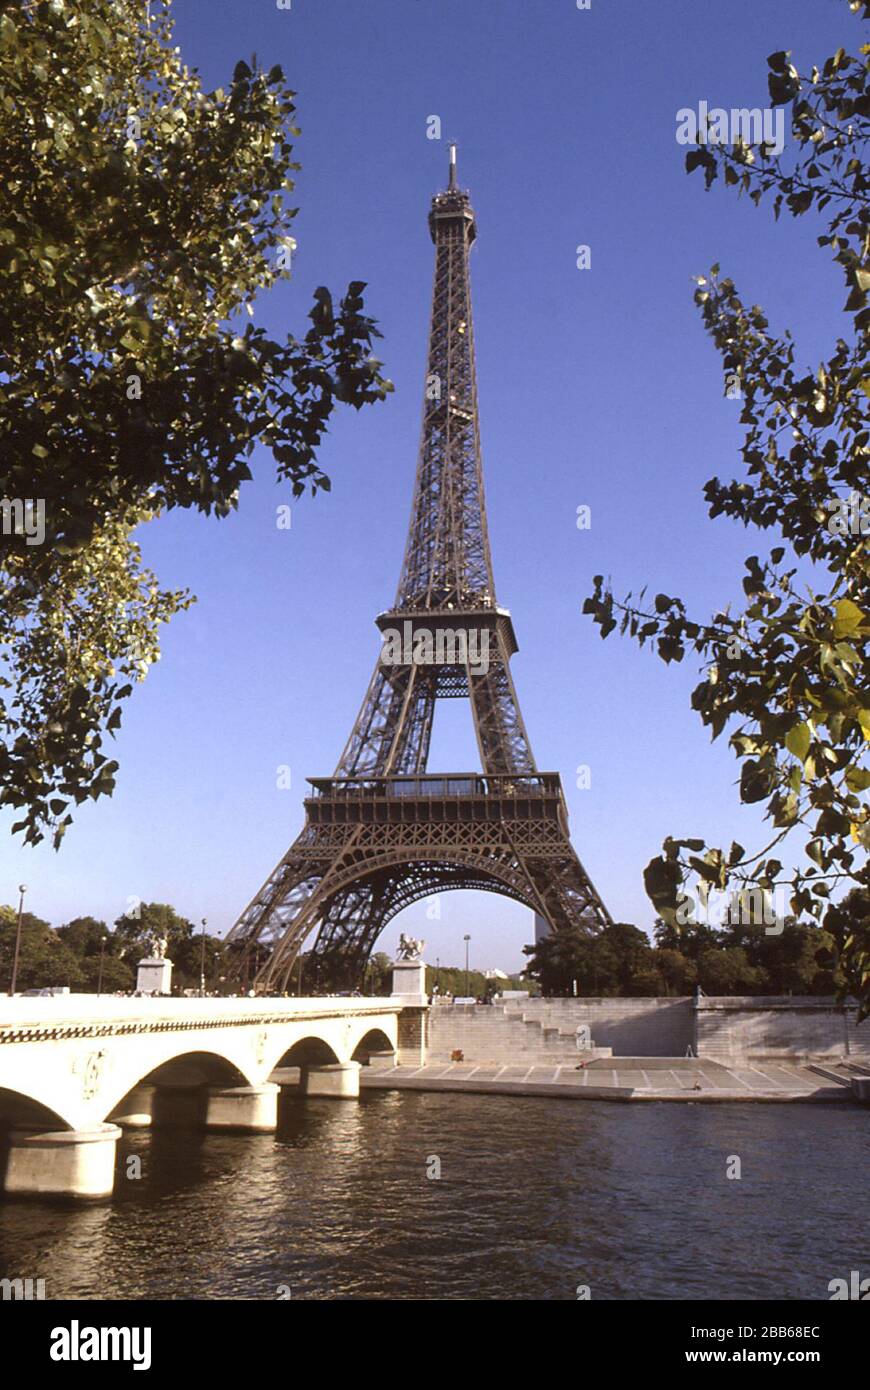 1985 Dr. Edwin P. Ewing, Jr. auf diesem Foto wurde der Eiffelturm in Paris, Frankreich, abgebildet. Der Turm wurde im Jahre 1889 nach etwas mehr als zwei Jahren Anstrengung fertiggestellt und stand 324 Meter hoch und ist das höchste Bauwerk innerhalb der Pariser Stadtgrenze. Mehr als 200 Millionen Menschen haben den Turm seit seiner Errichtung besucht. Umfragen aus dem Jahr 1996 ergaben, dass der Eiffelturm für Bürger, die in Industrieländern leben, das am meisten anerkannte Denkmal in Europa war. Paris ist ein wichtiges internationales Touristenziel. Daher ist es wichtig, dass alle Reisenden sich dessen bewusst sind Stockfoto